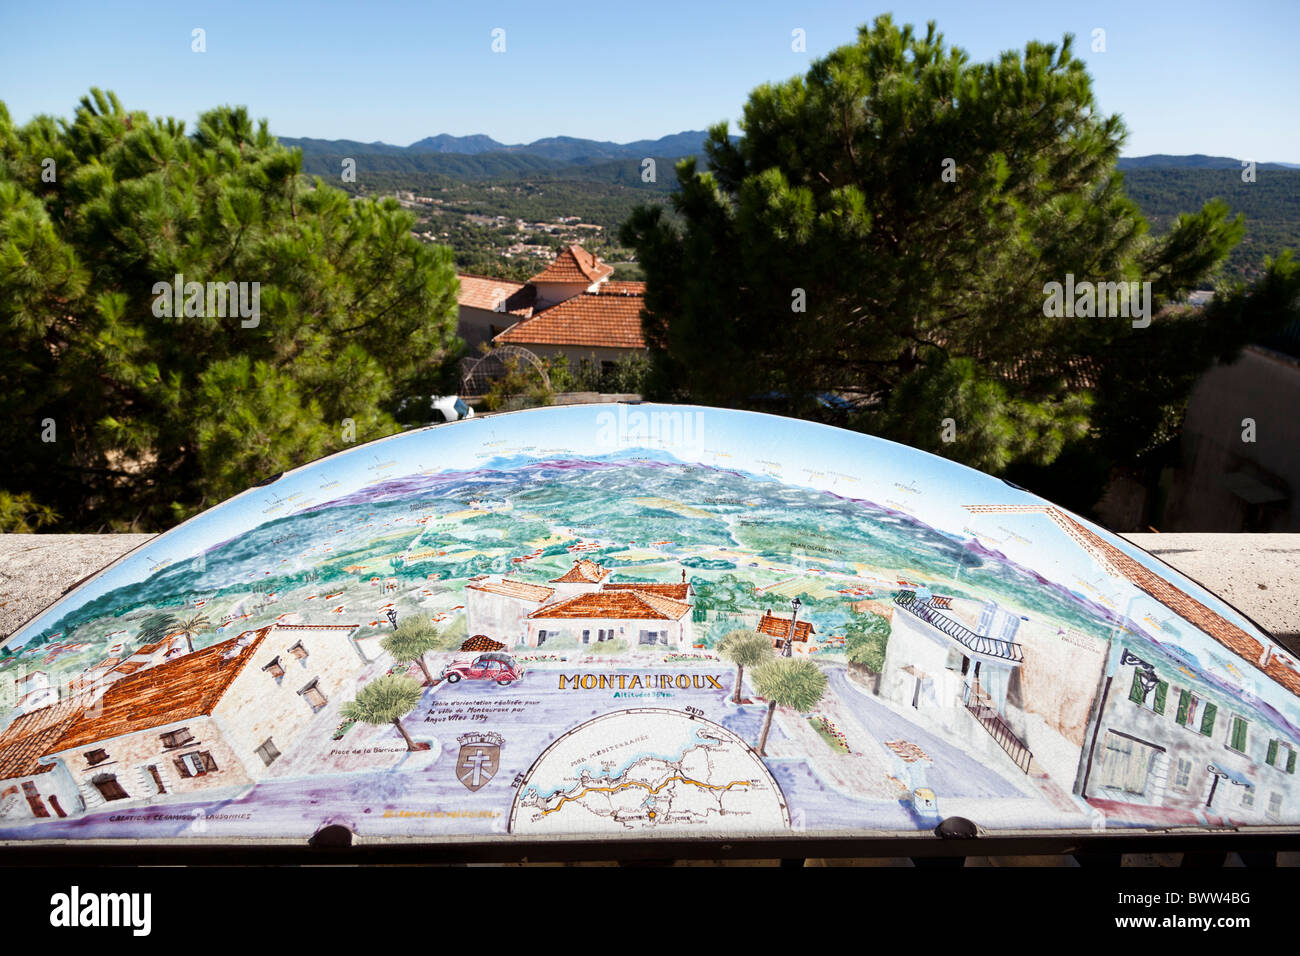 Un plan panoramique de la vue de Montauroux, Var, Provence-Alpes-Côte d'Azur, France. Banque D'Images